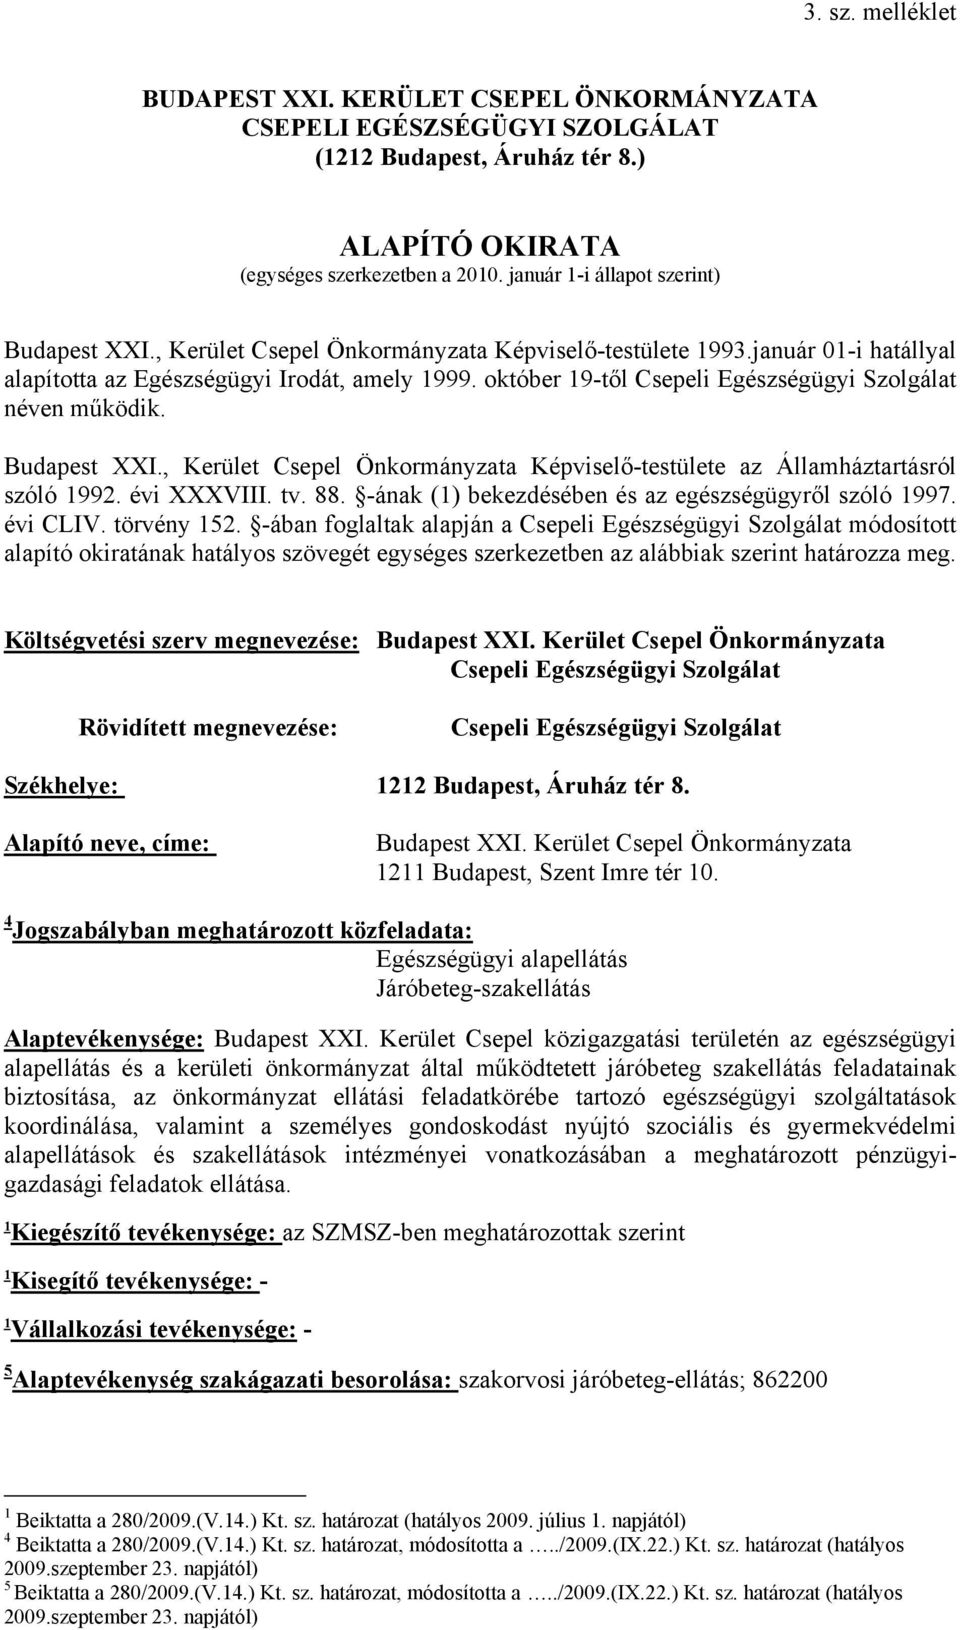 Budapest XXI., Kerület Csepel Önkormányzata Képviselő-testülete az Államháztartásról szóló 99. évi XXXVIII. tv. 88. -ának () bekezdésében és az egészségügyről szóló 997. évi CLIV. törvény 5.